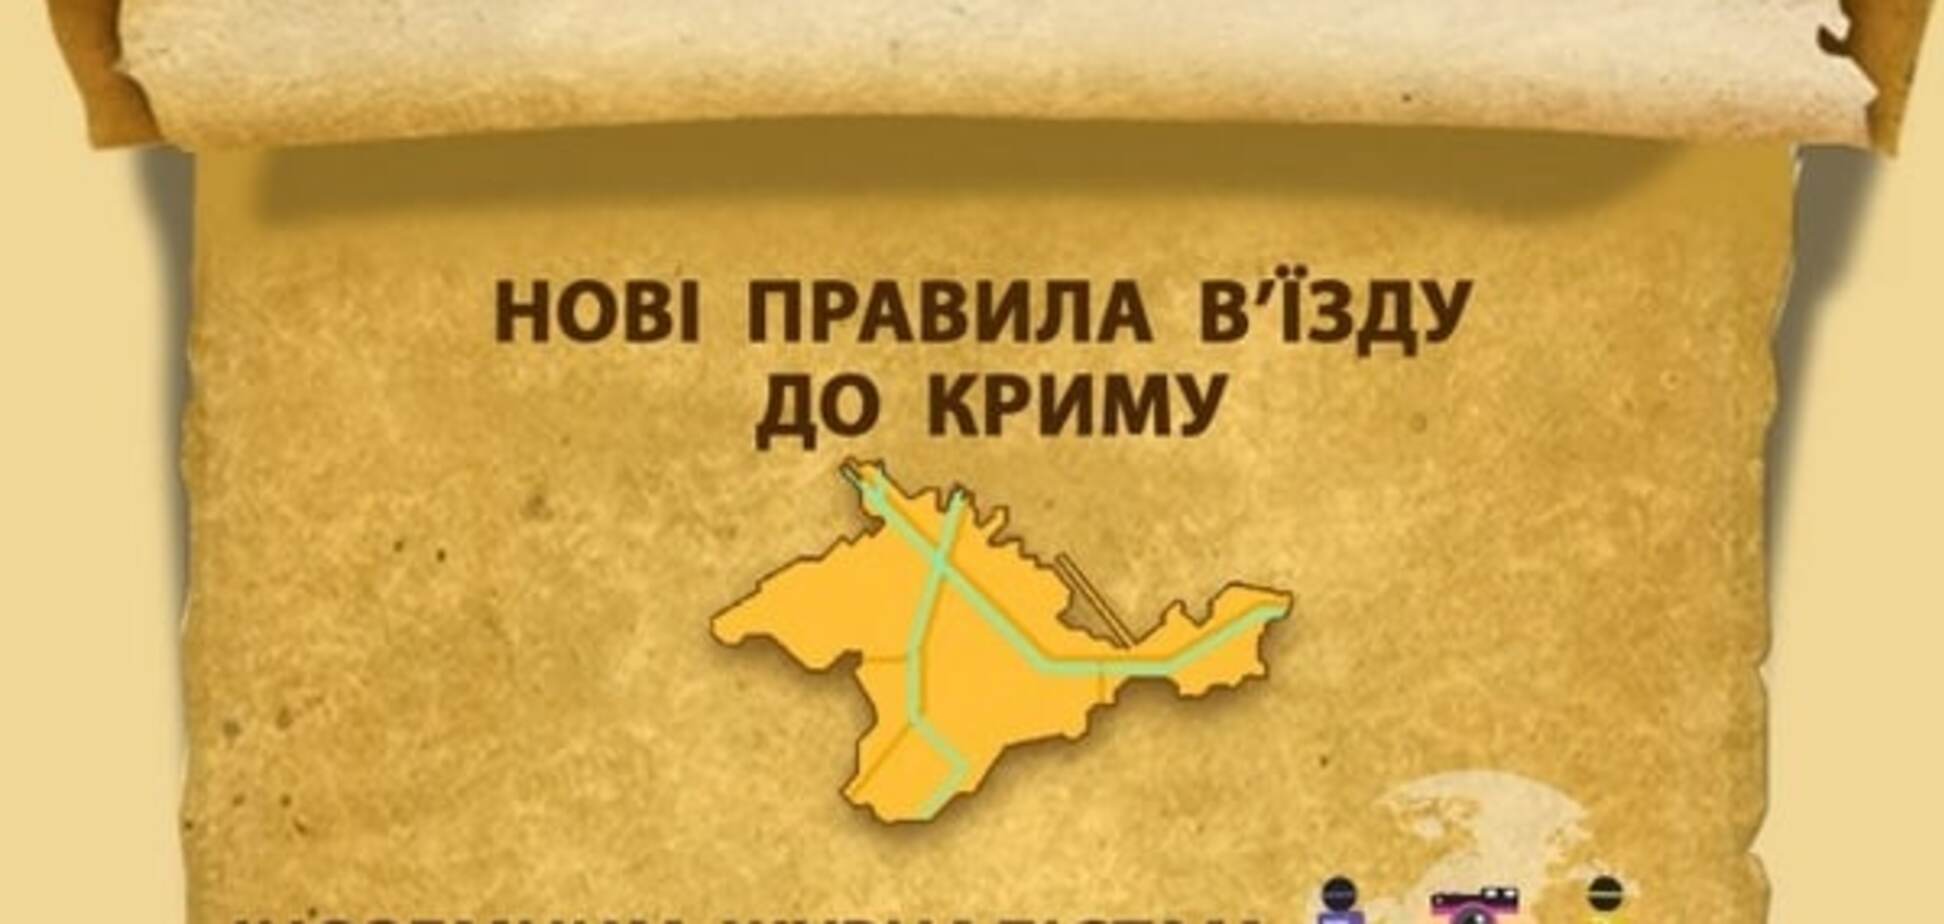 Как изменился порядок въезда в Крым: опубликована инфографика